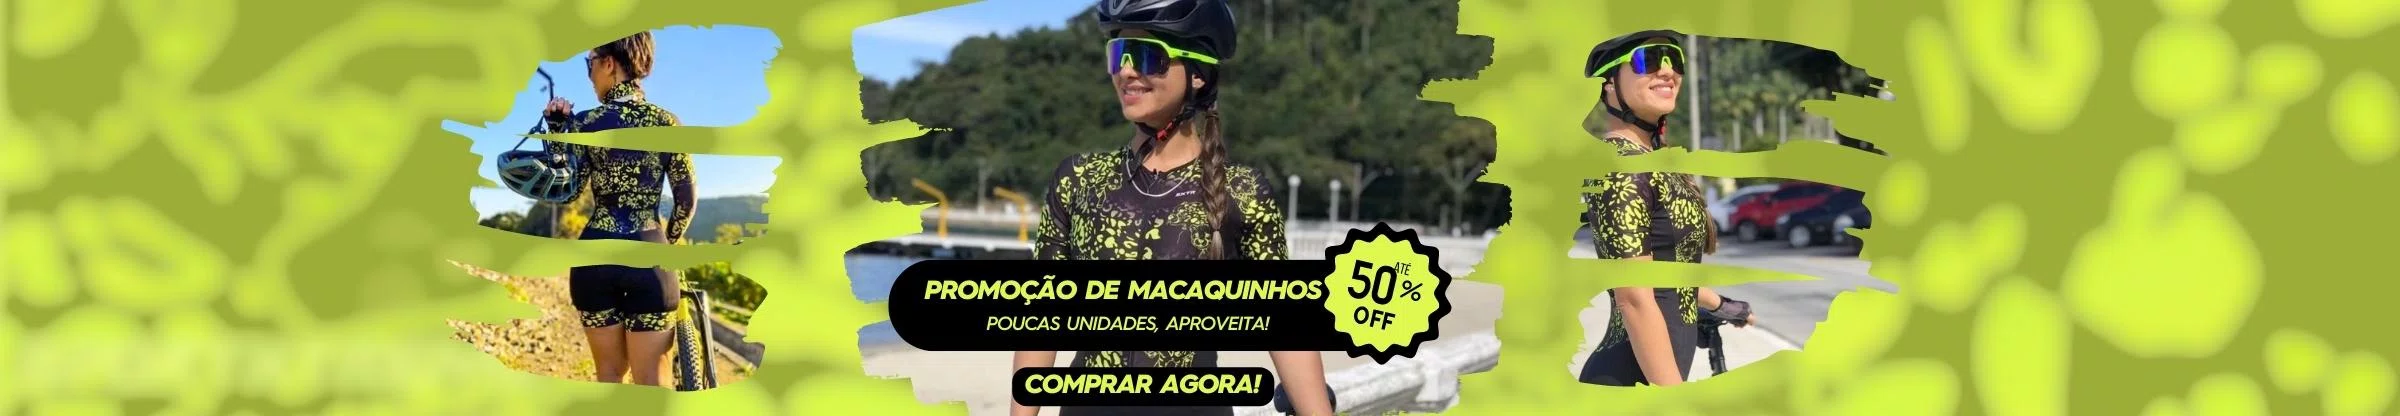 Macaquinho 50OFF